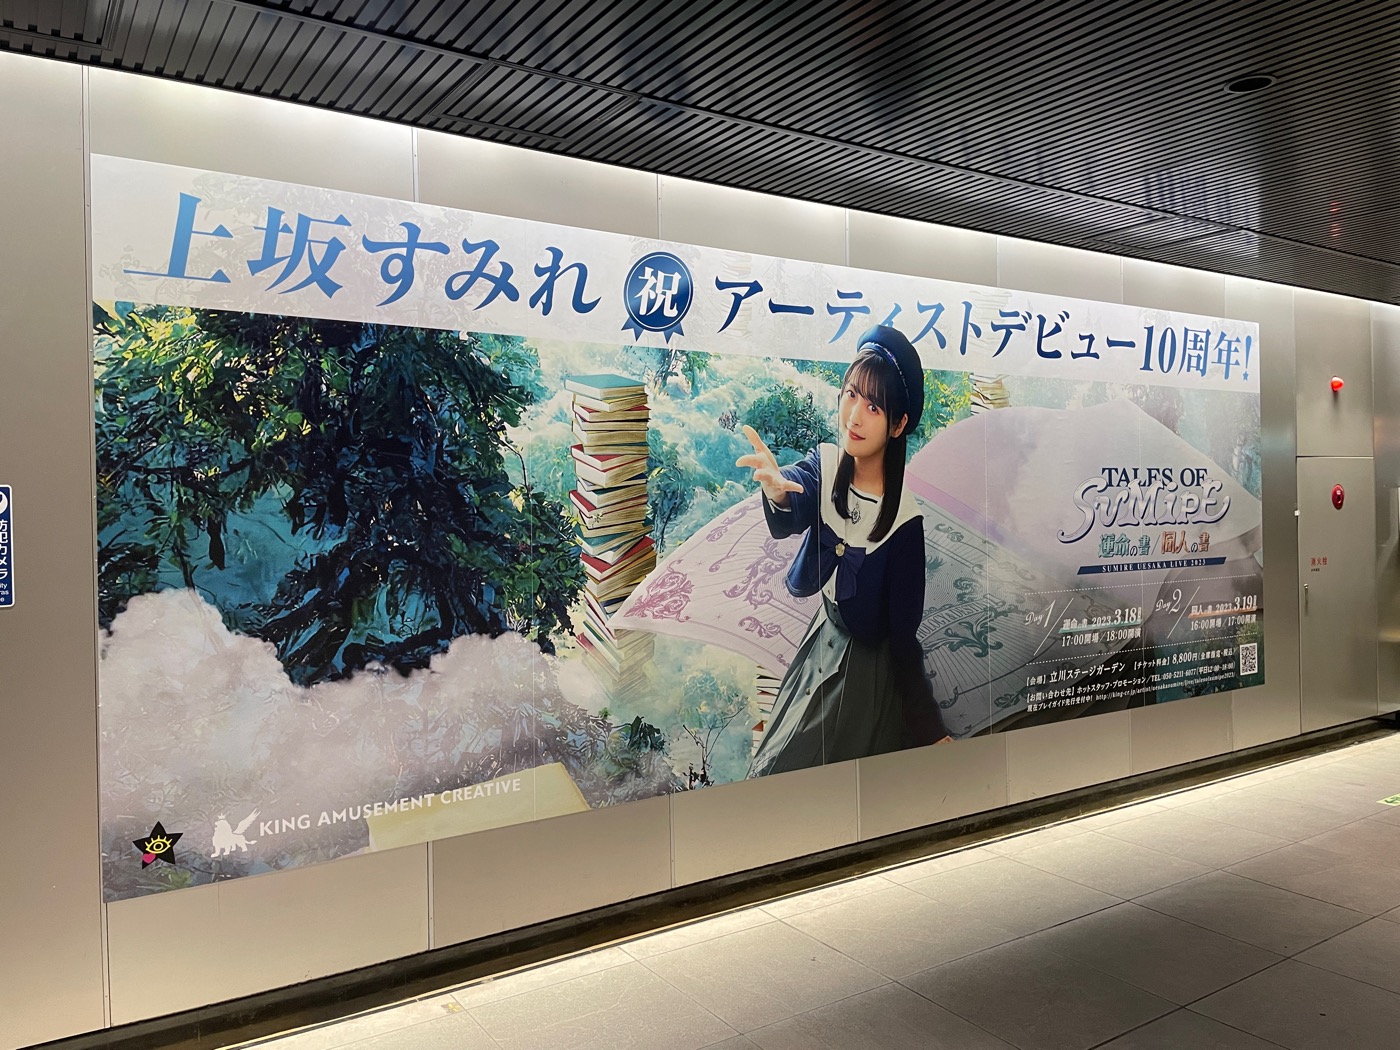 上坂すみれ、渋谷駅にアーティストデビュー10周年を記念した大型ポスターを掲出中 - 画像一覧（3/3）